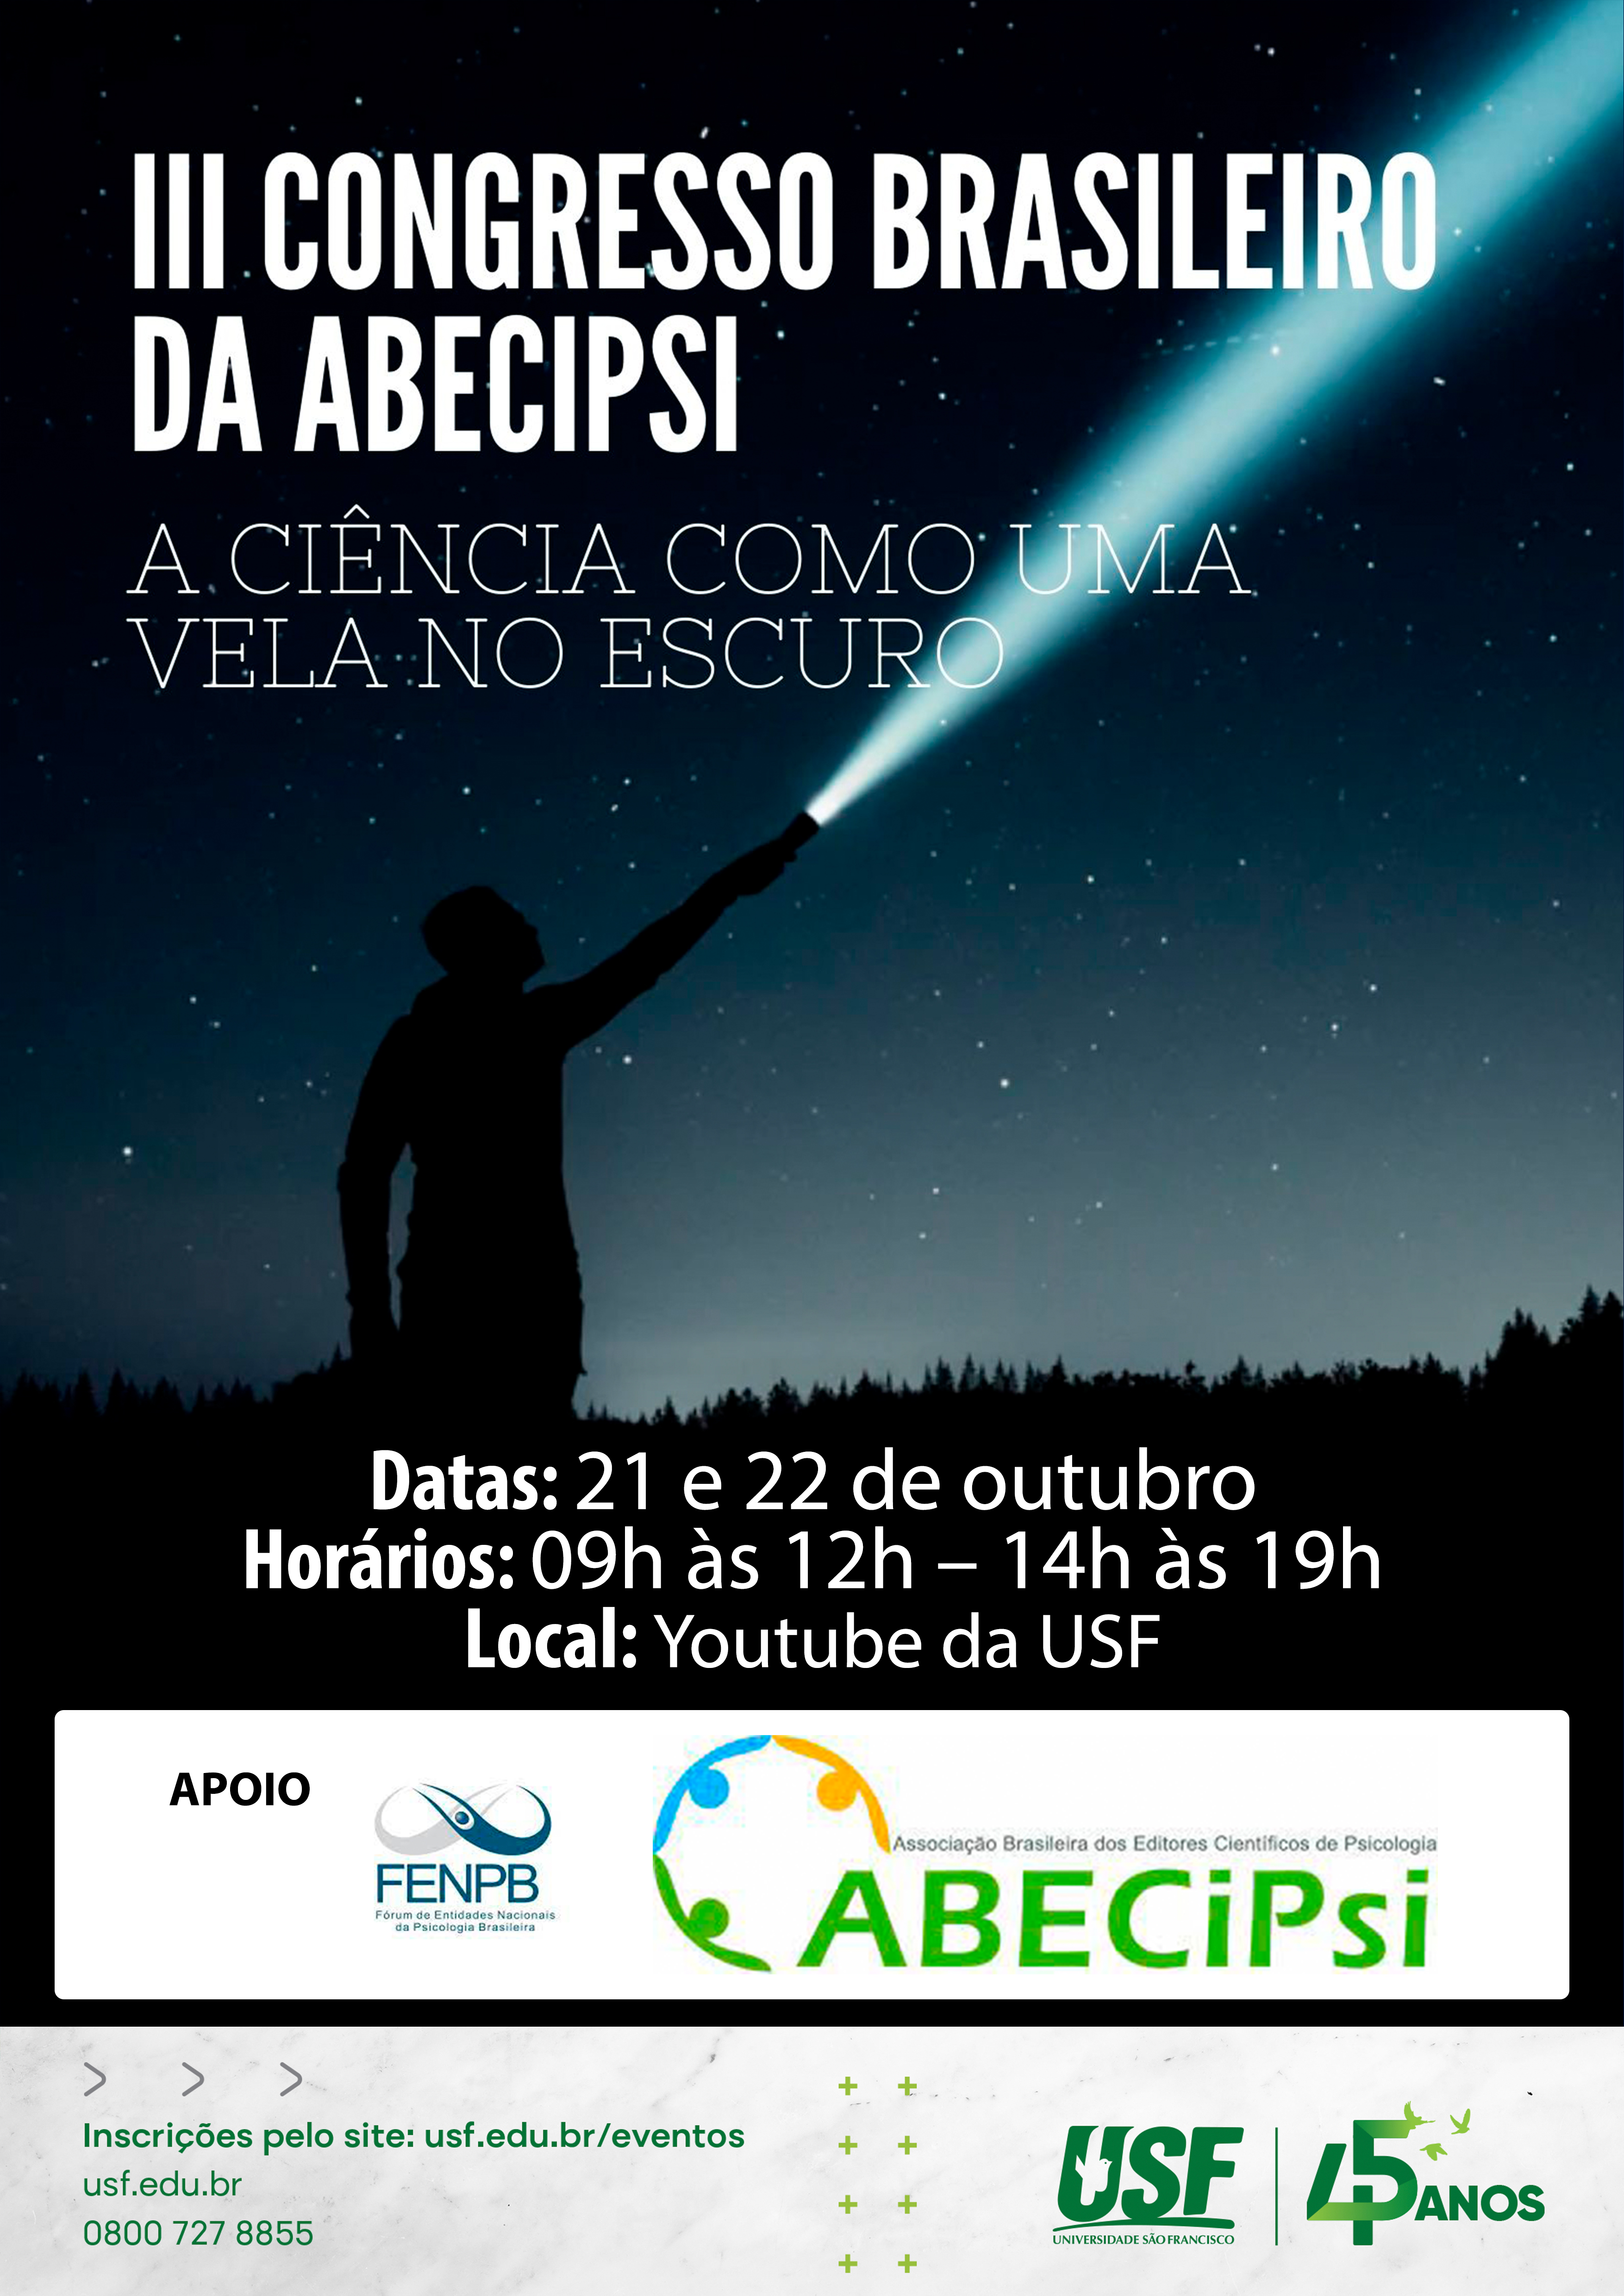 III Congresso Brasileiro da Associação Brasileira de Editores Científicos de Psicologia